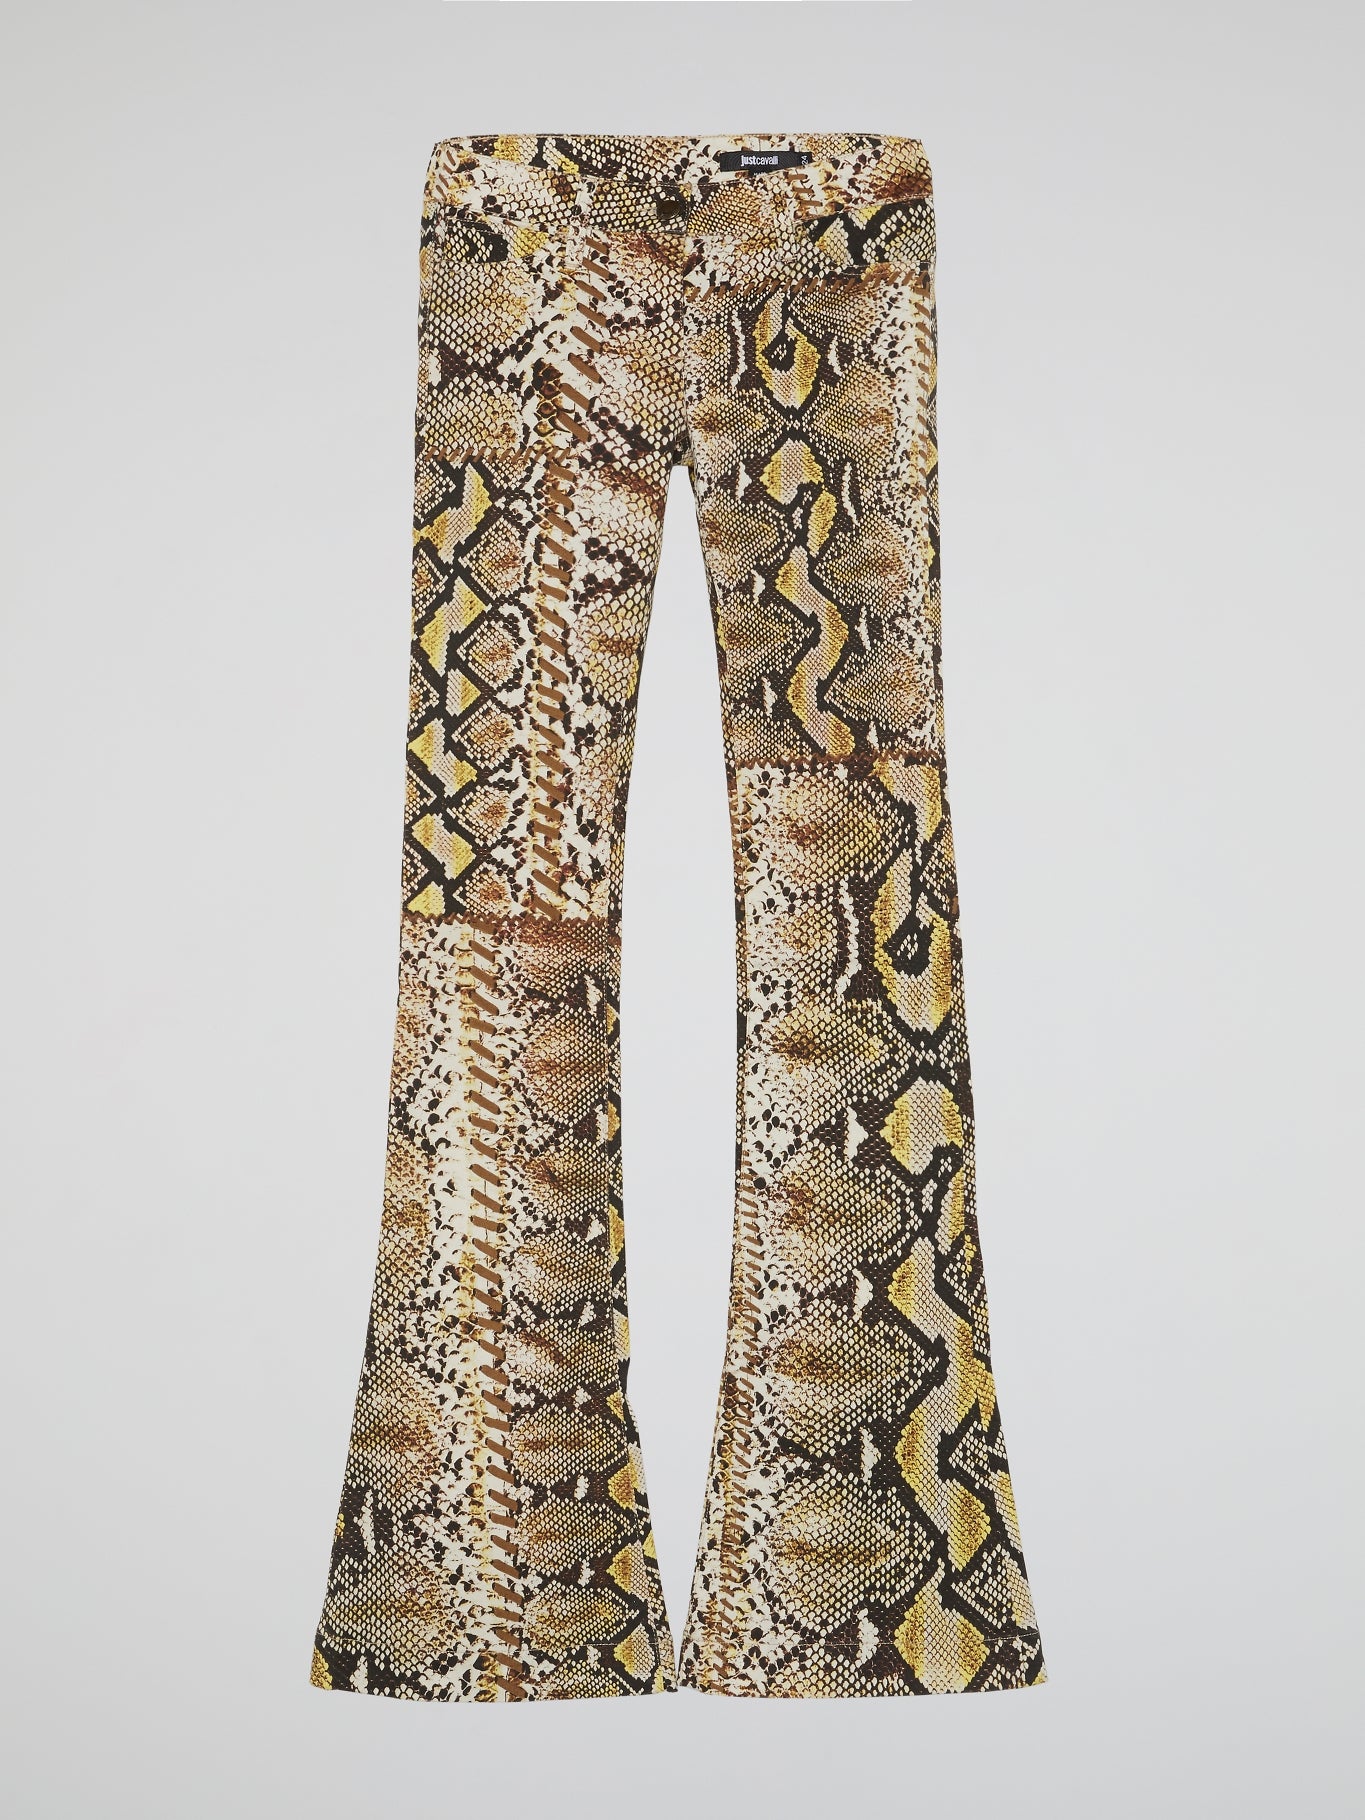 Snake Print Bell Bottom Pants